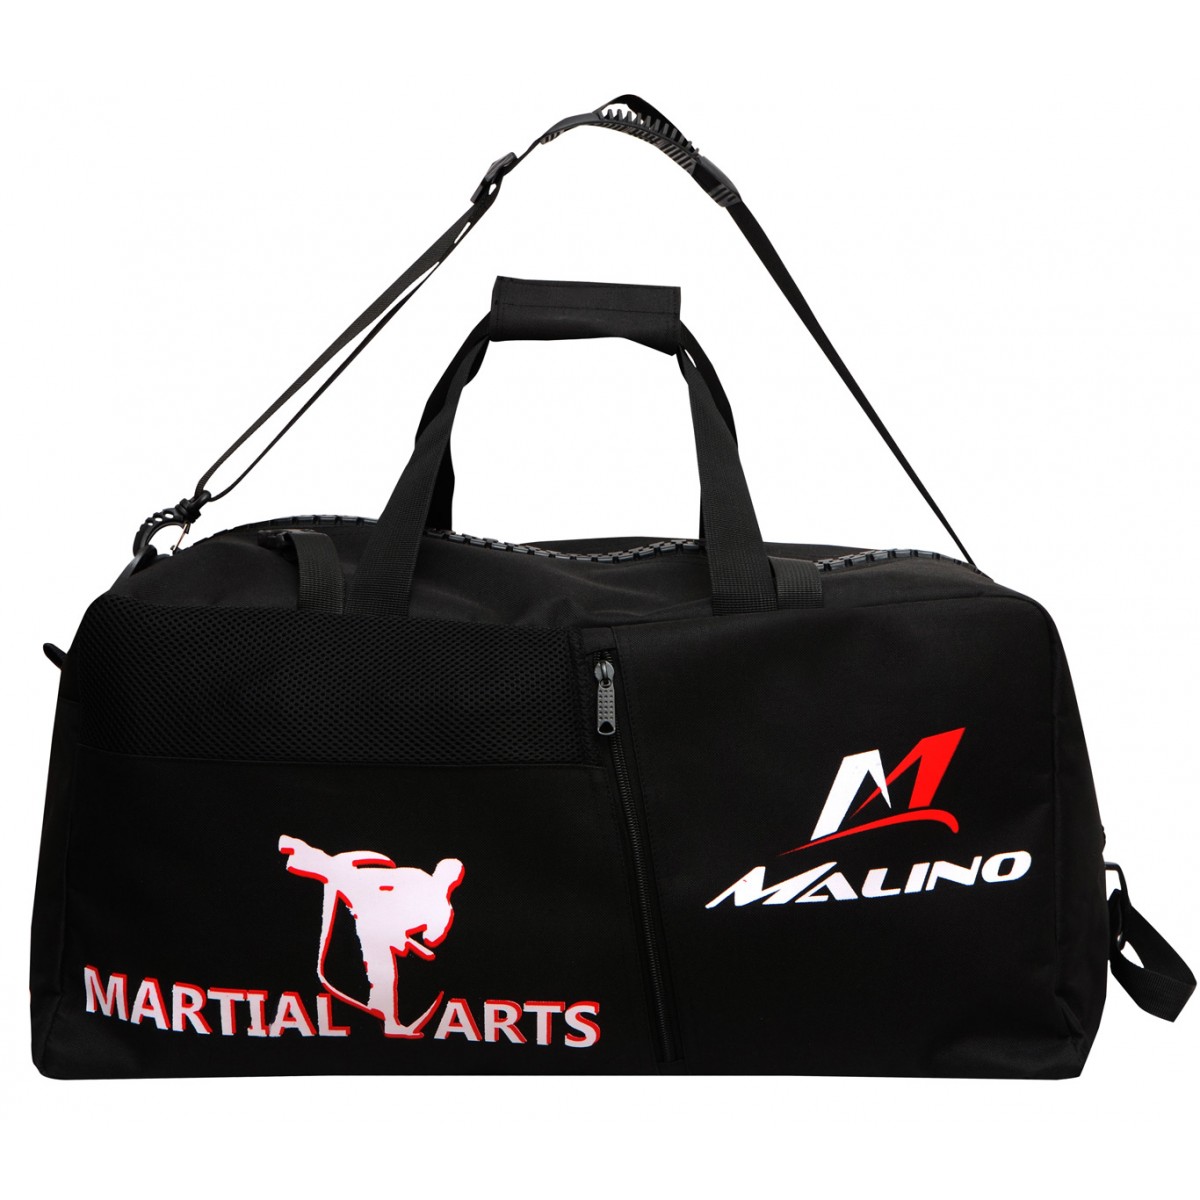 Malino Large Martial Arts Sports Bag Black